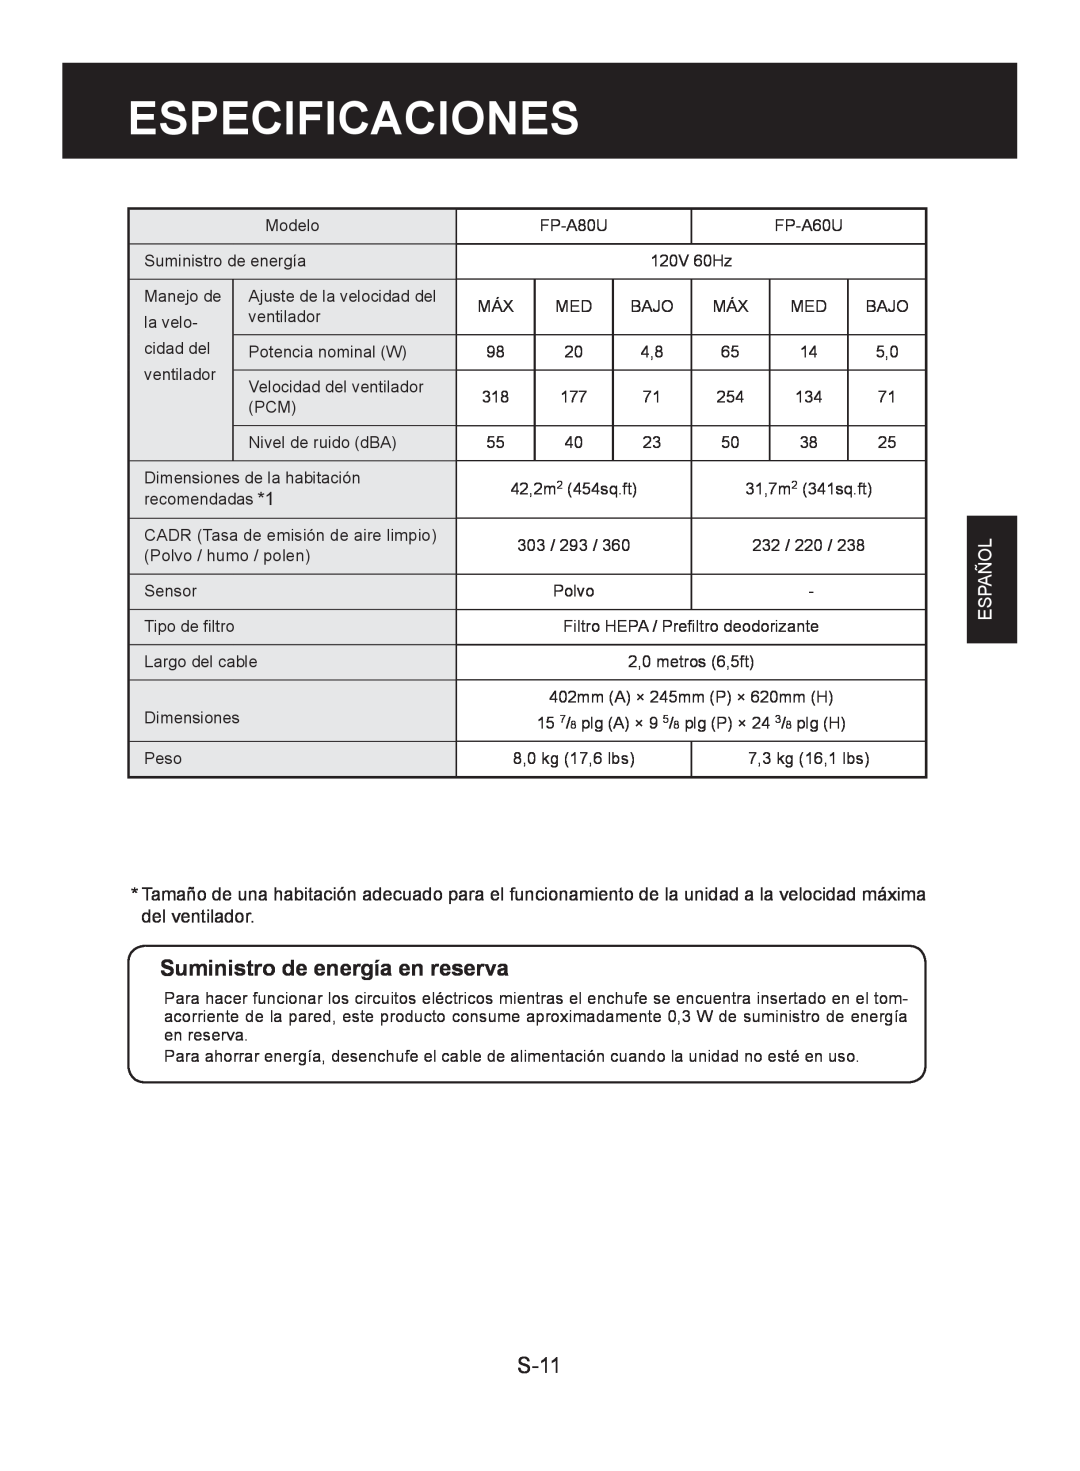 Sharp FP-A60U, FP-A80UW operation manual Especificaciones, Suministro de energía en reserva, S-11, Español 